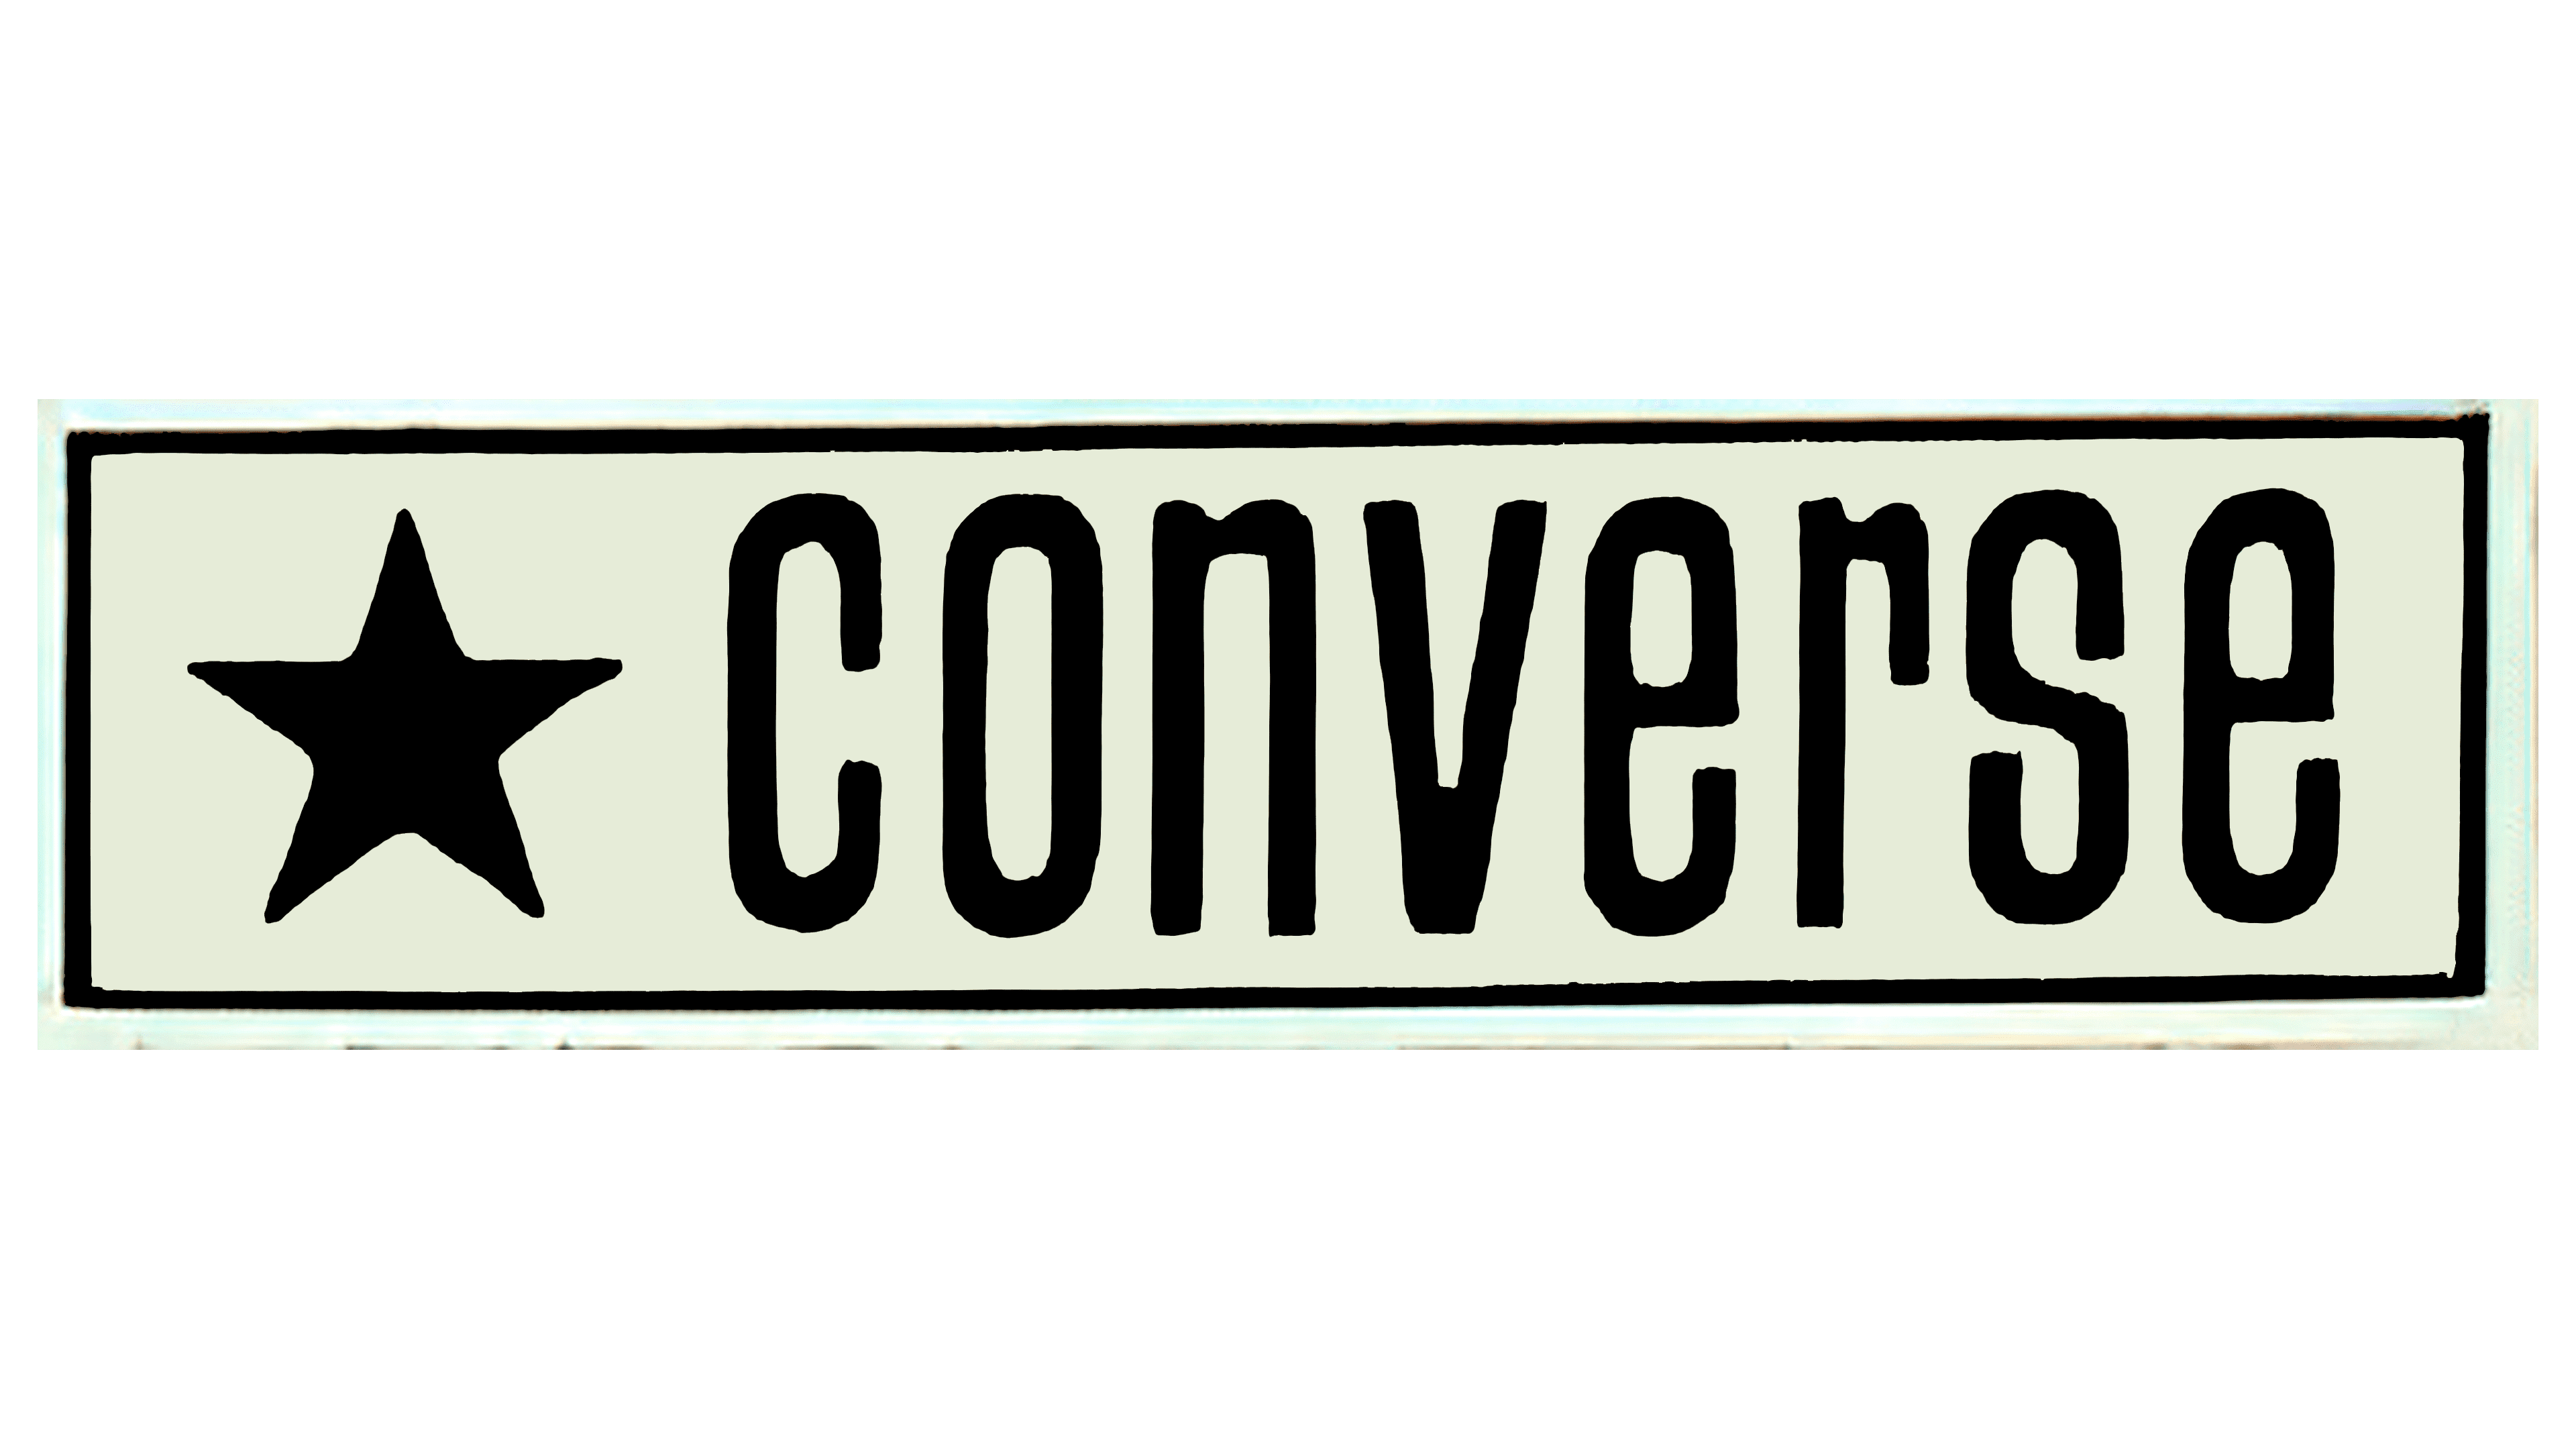 converse 2017 logo